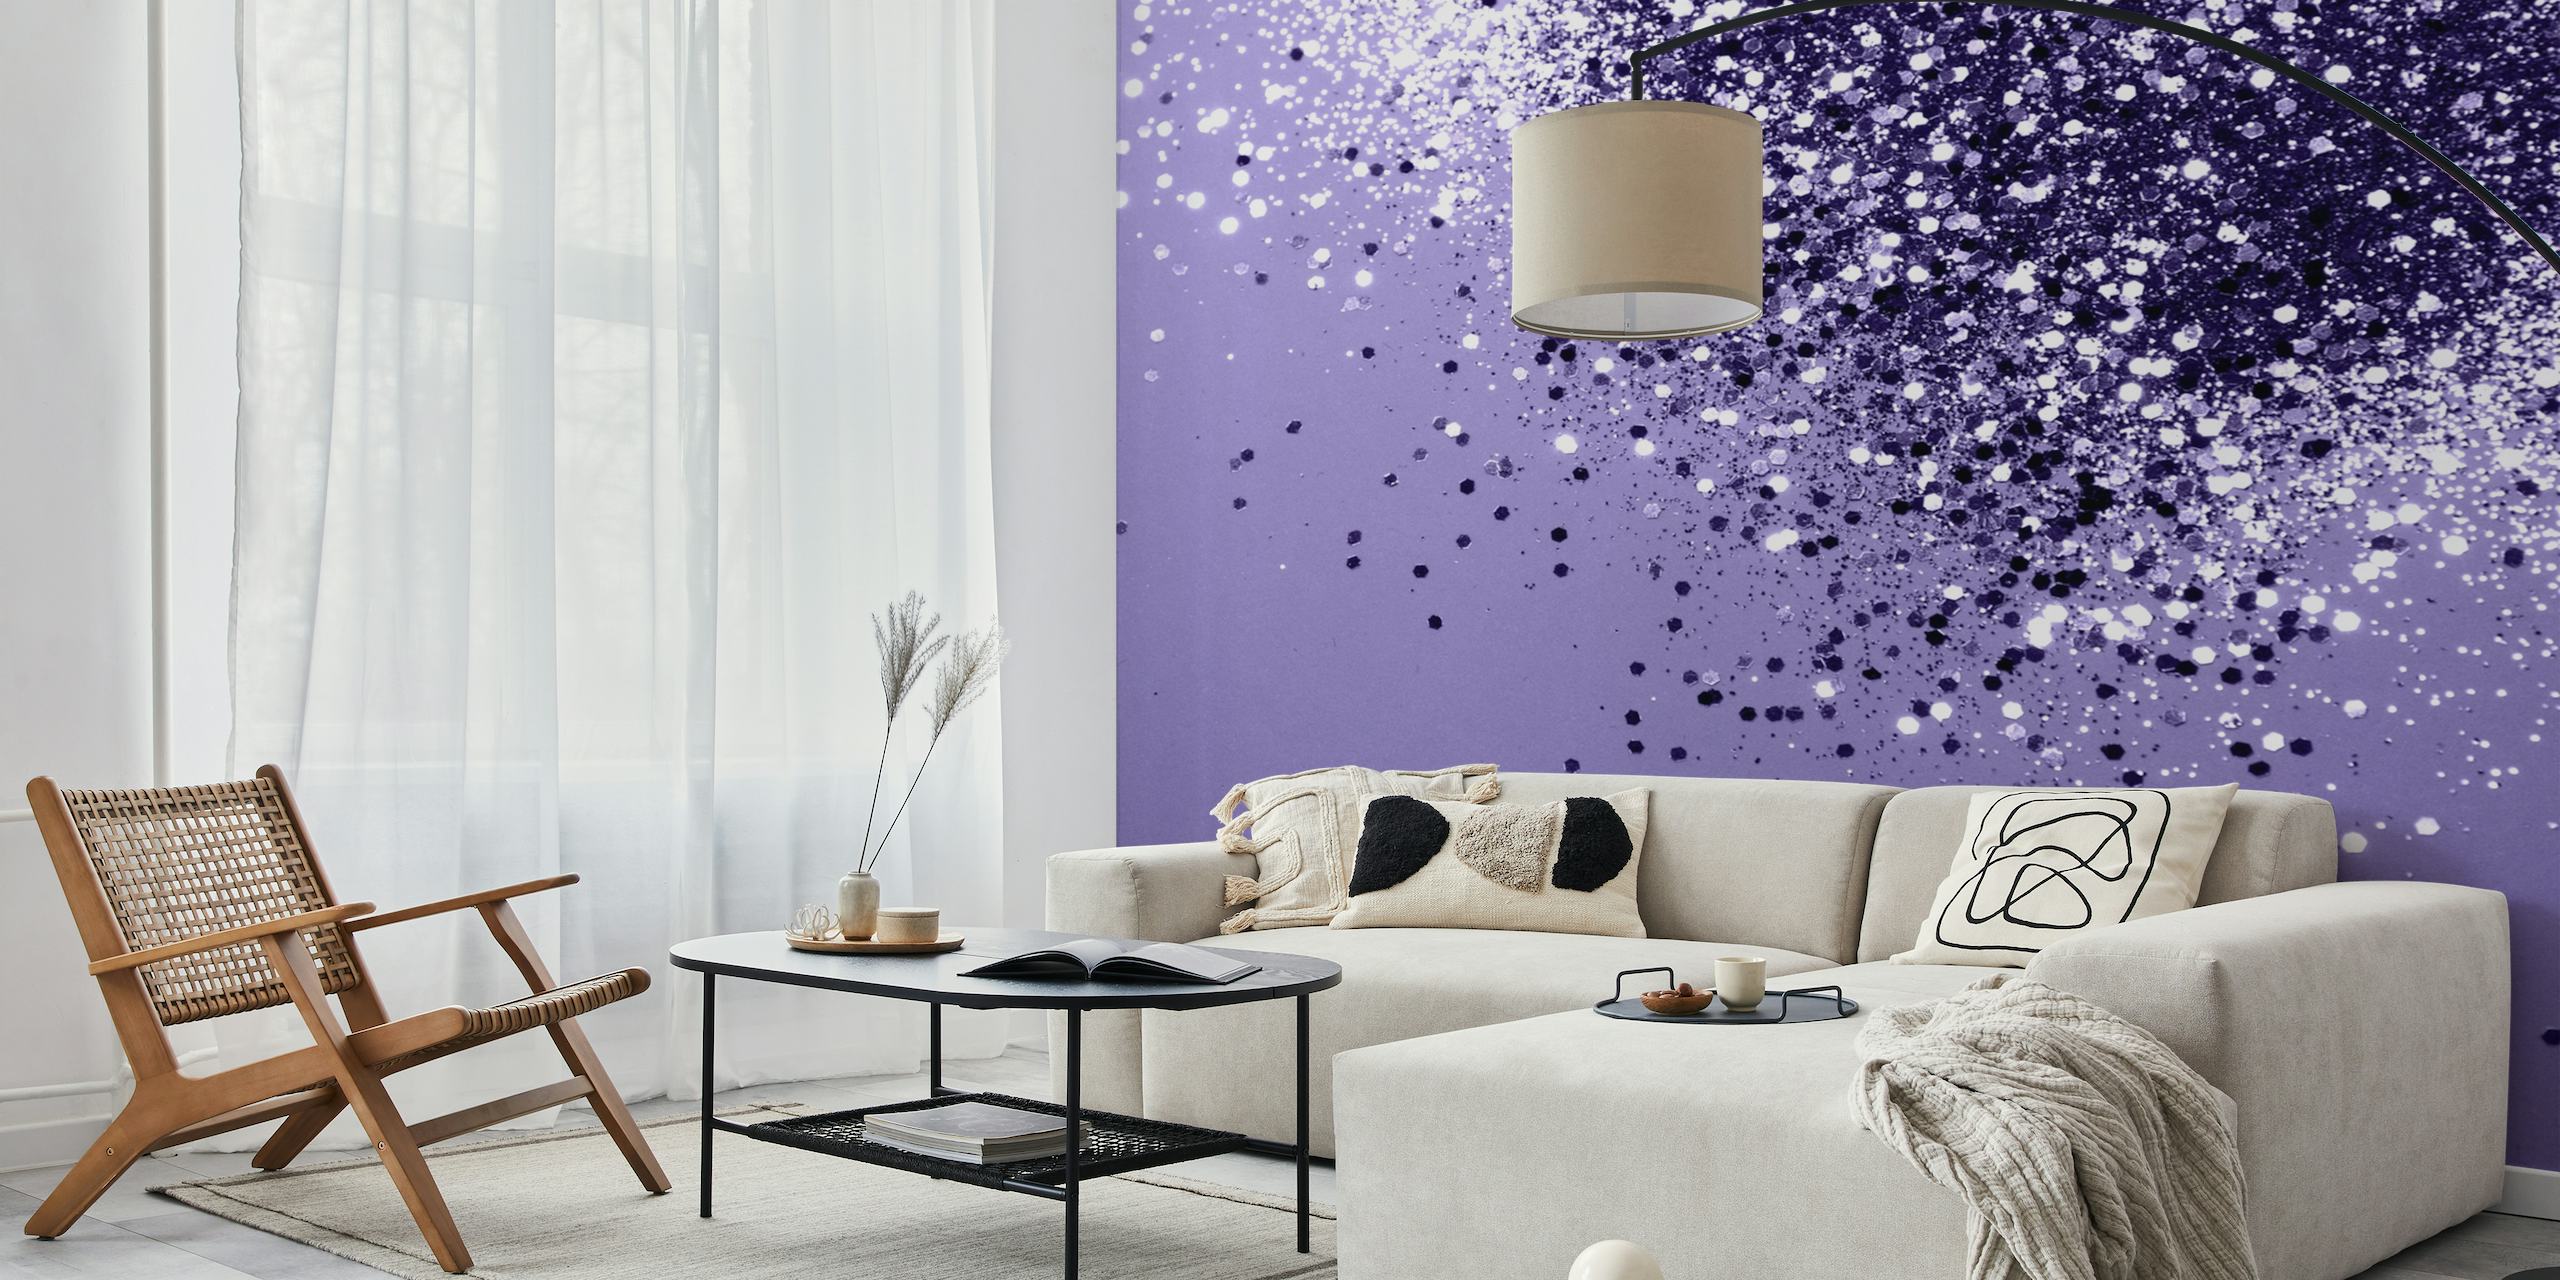 Ultra Violet Glitter Dream 1 fotobehang met sprankelende glitters op een paarse achtergrond